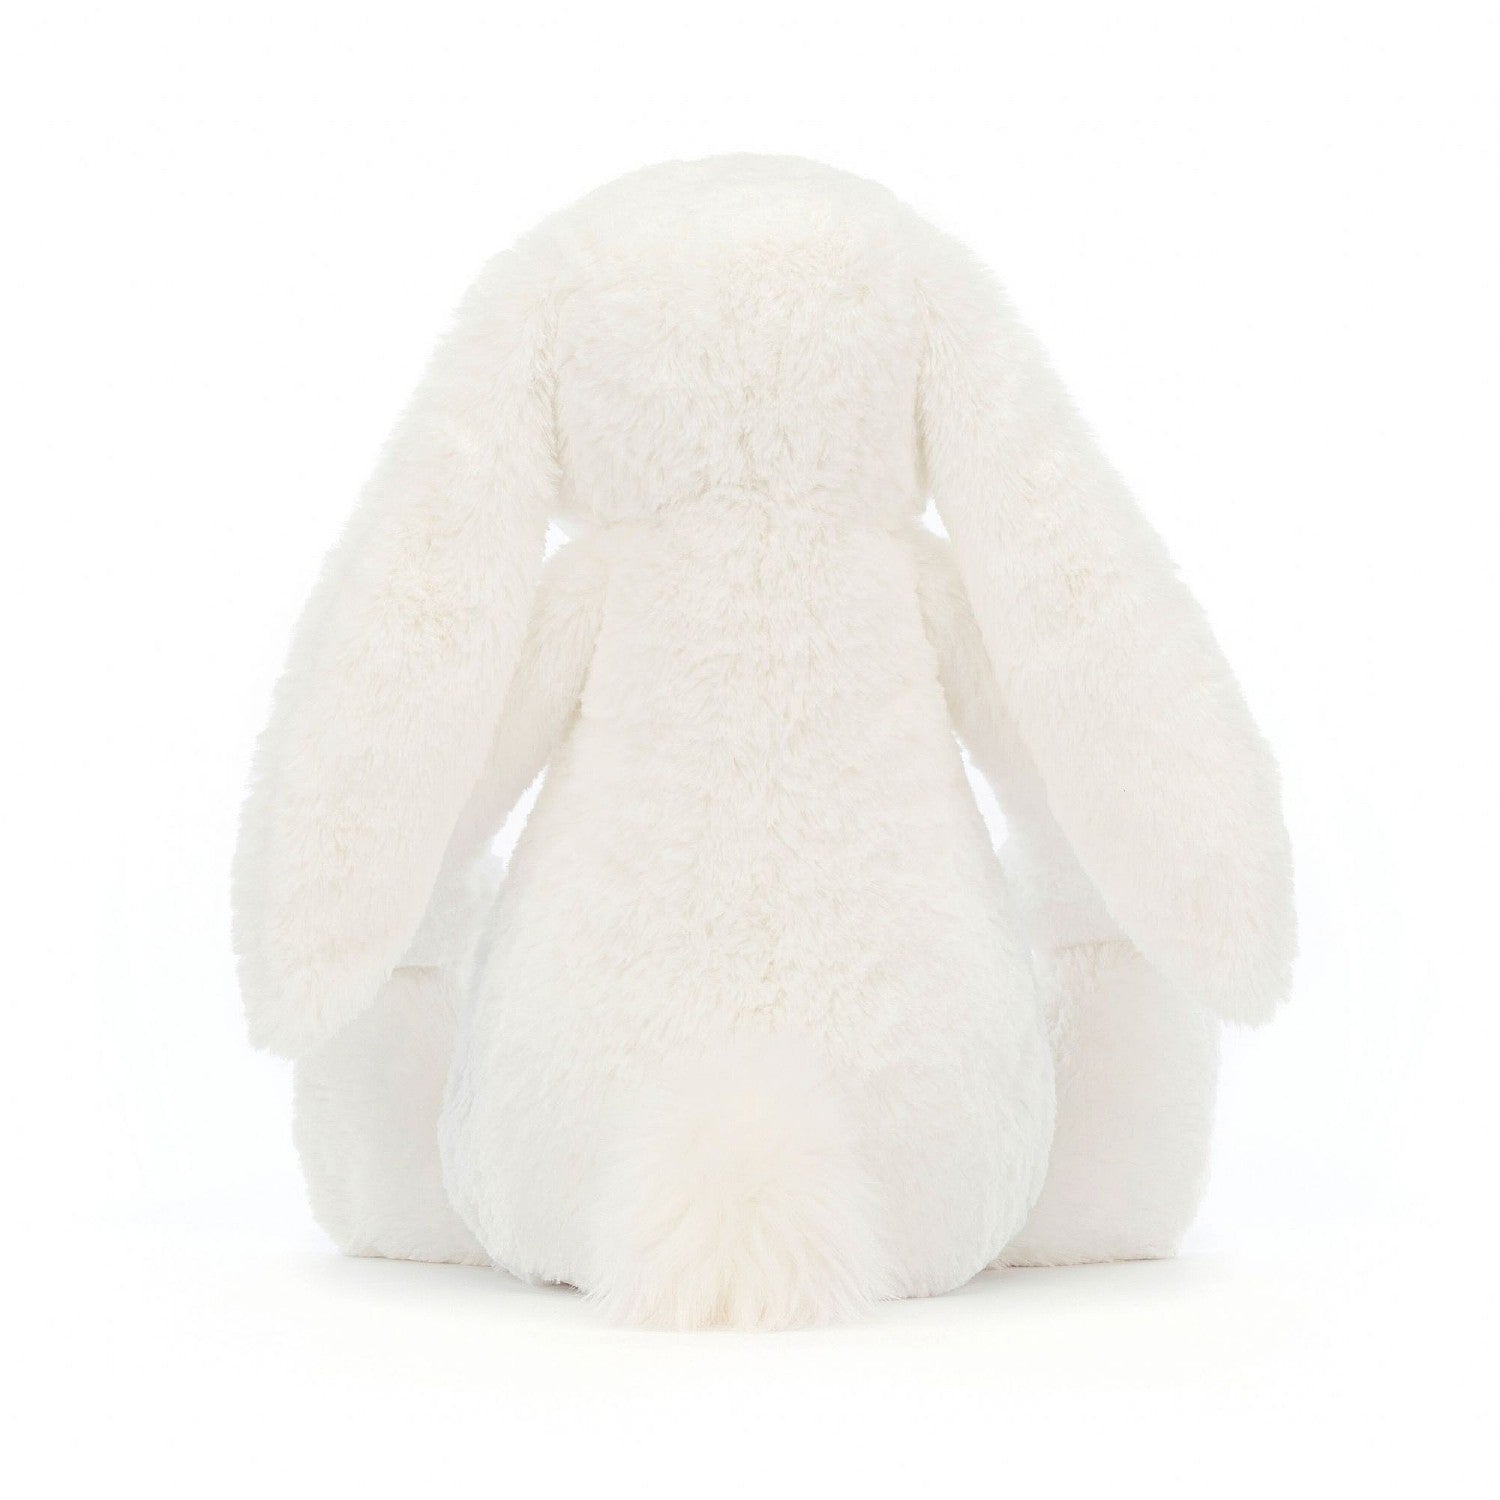 Huge Bashful Luxe Bunny Luna - Twinkle Twinkle Little One